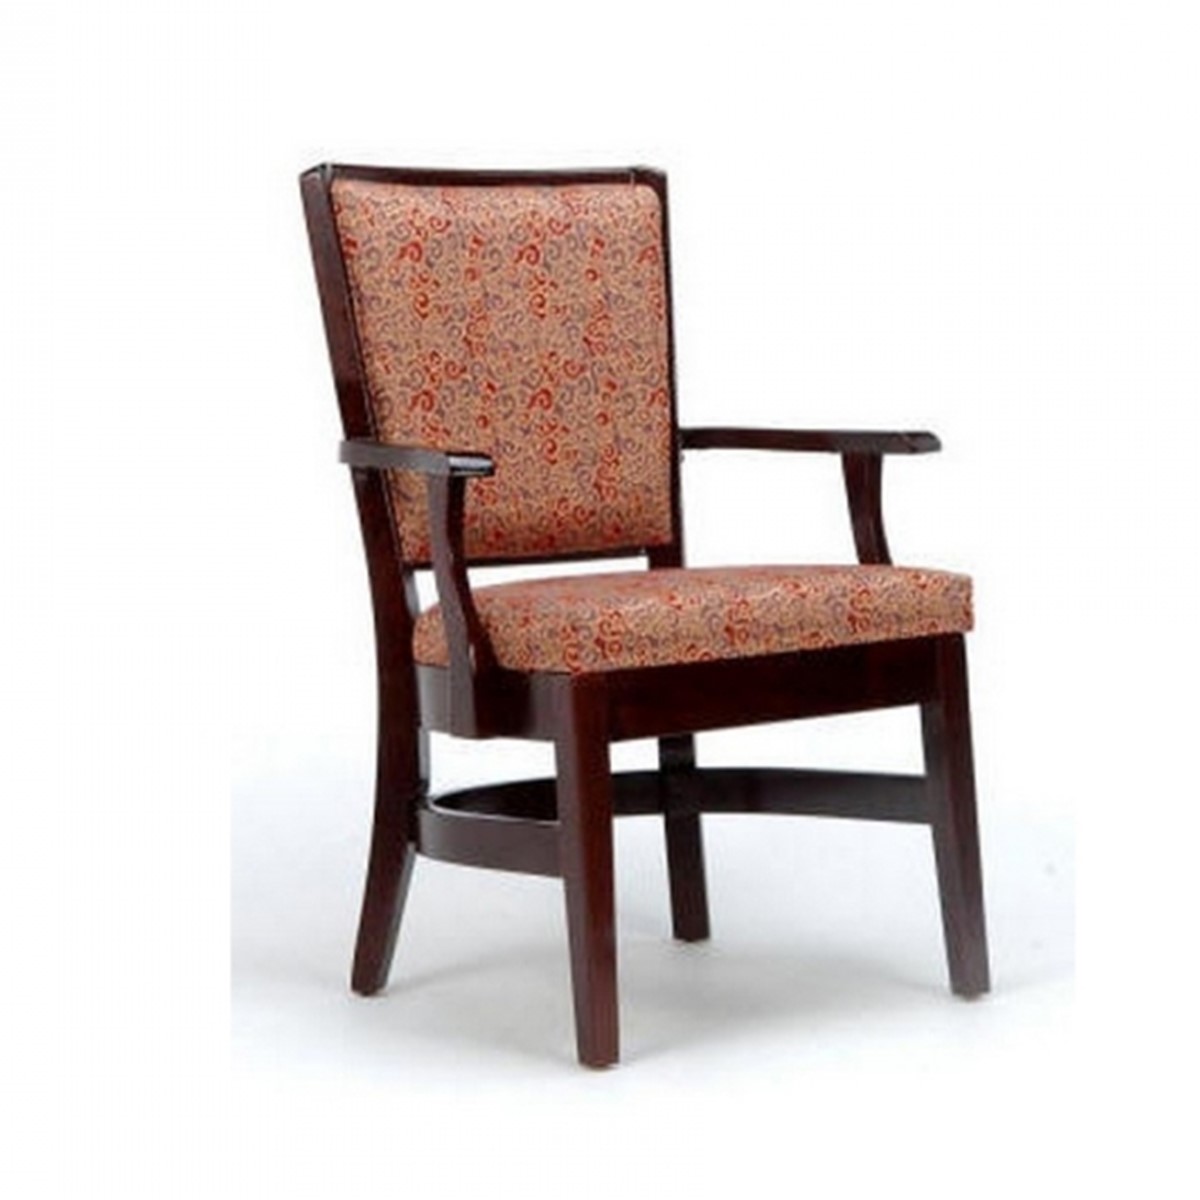 Arm Chair Model 3021A